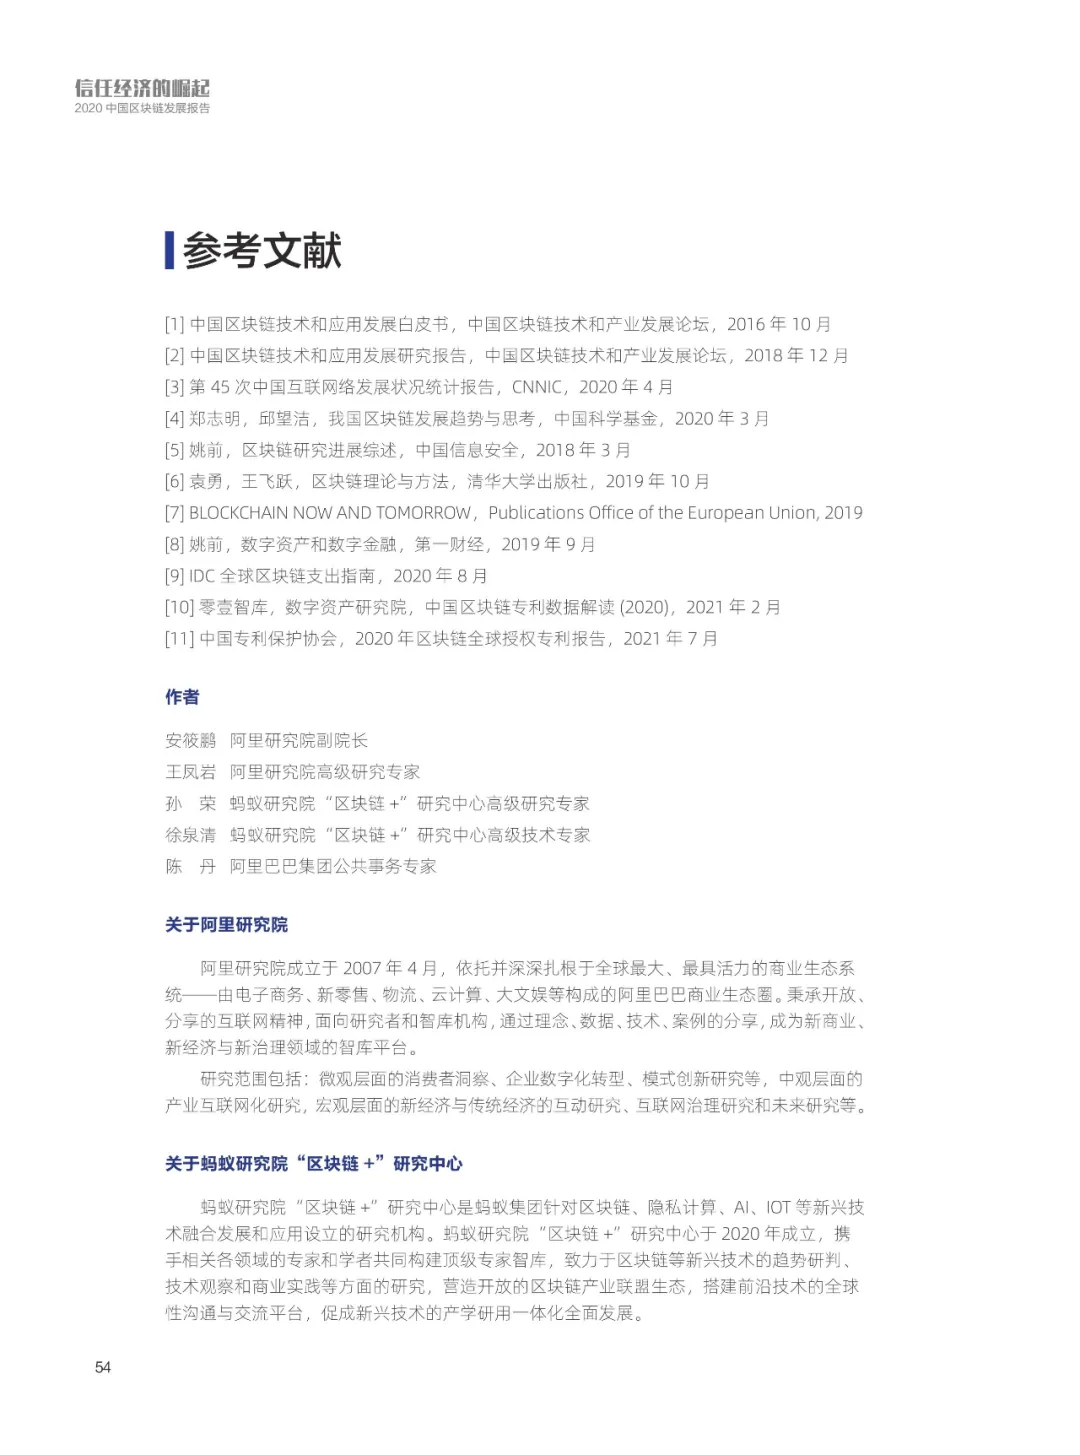 信任经济的崛起——2020中国区块链发展报告_加密算法_55